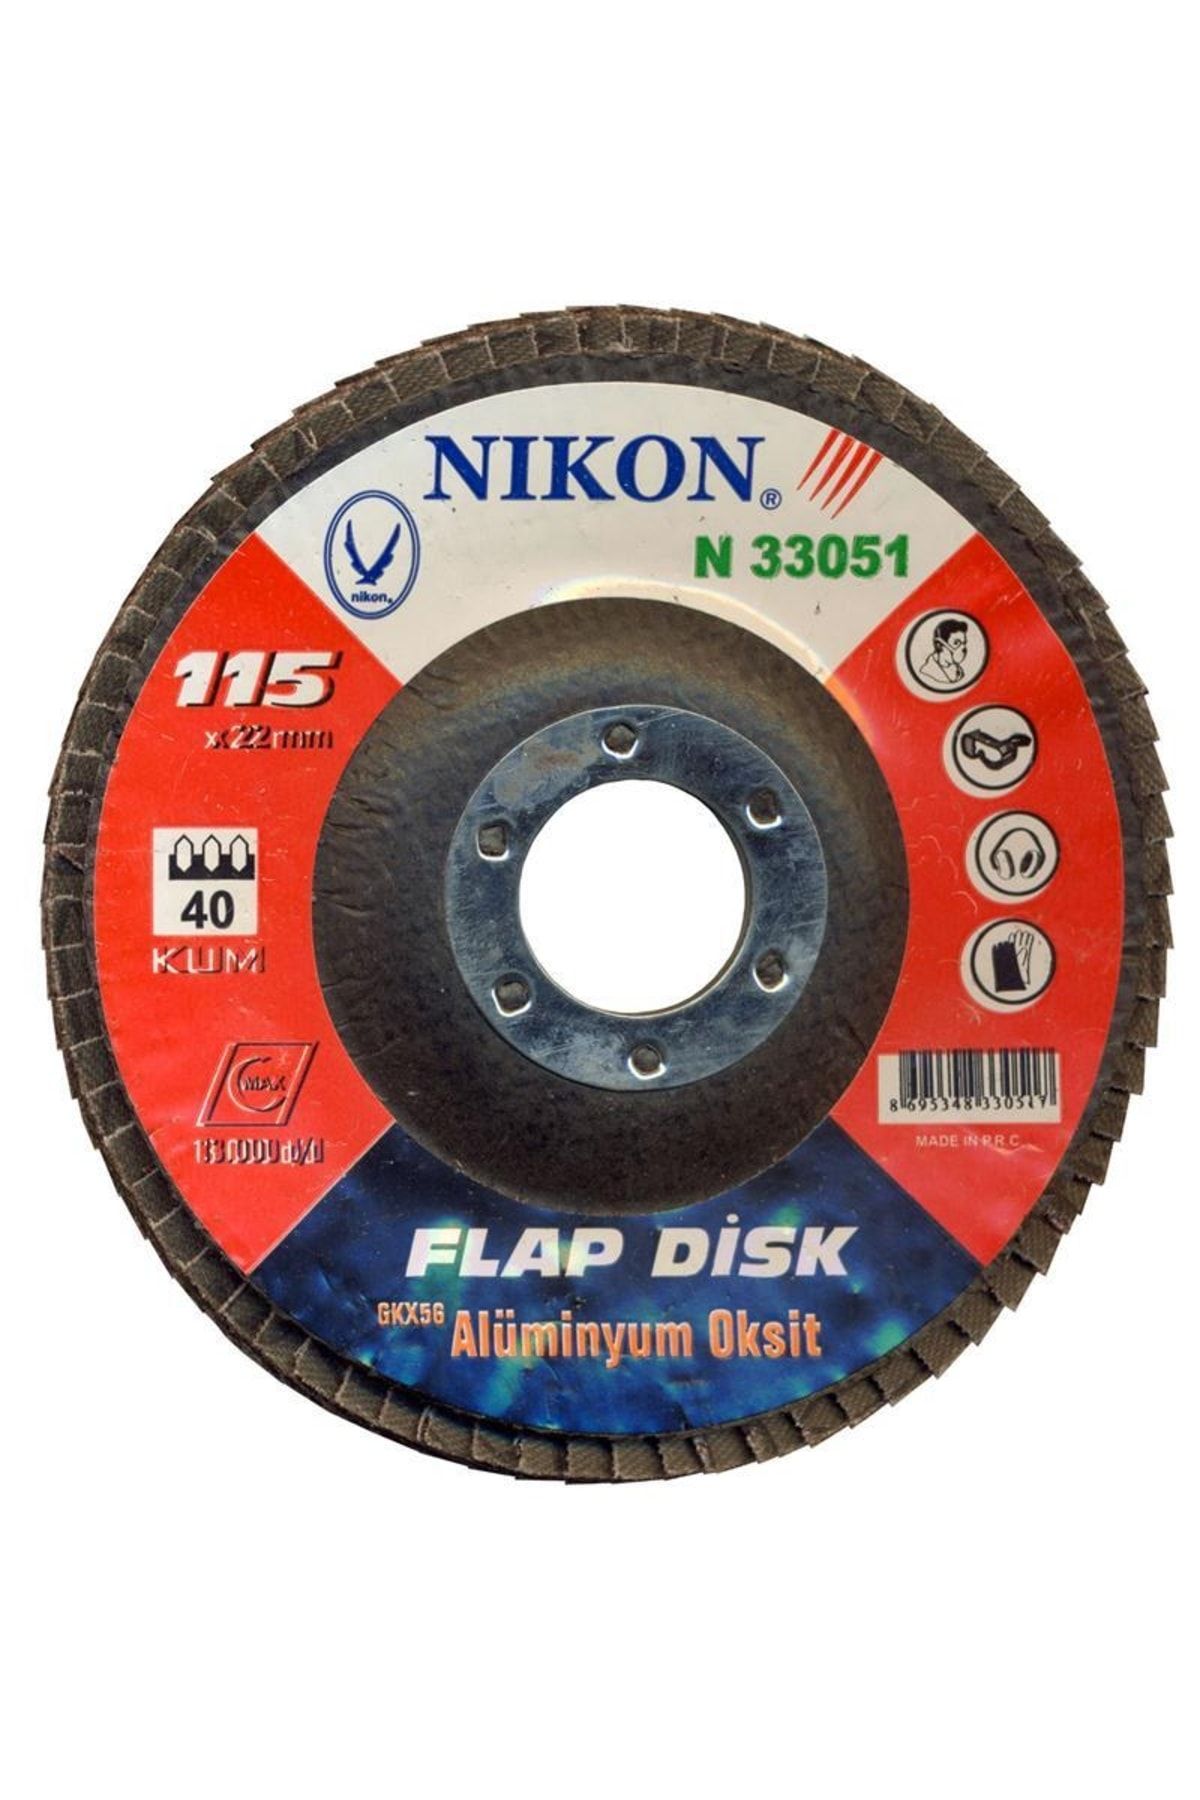 Nikon N33057 Flap Disk